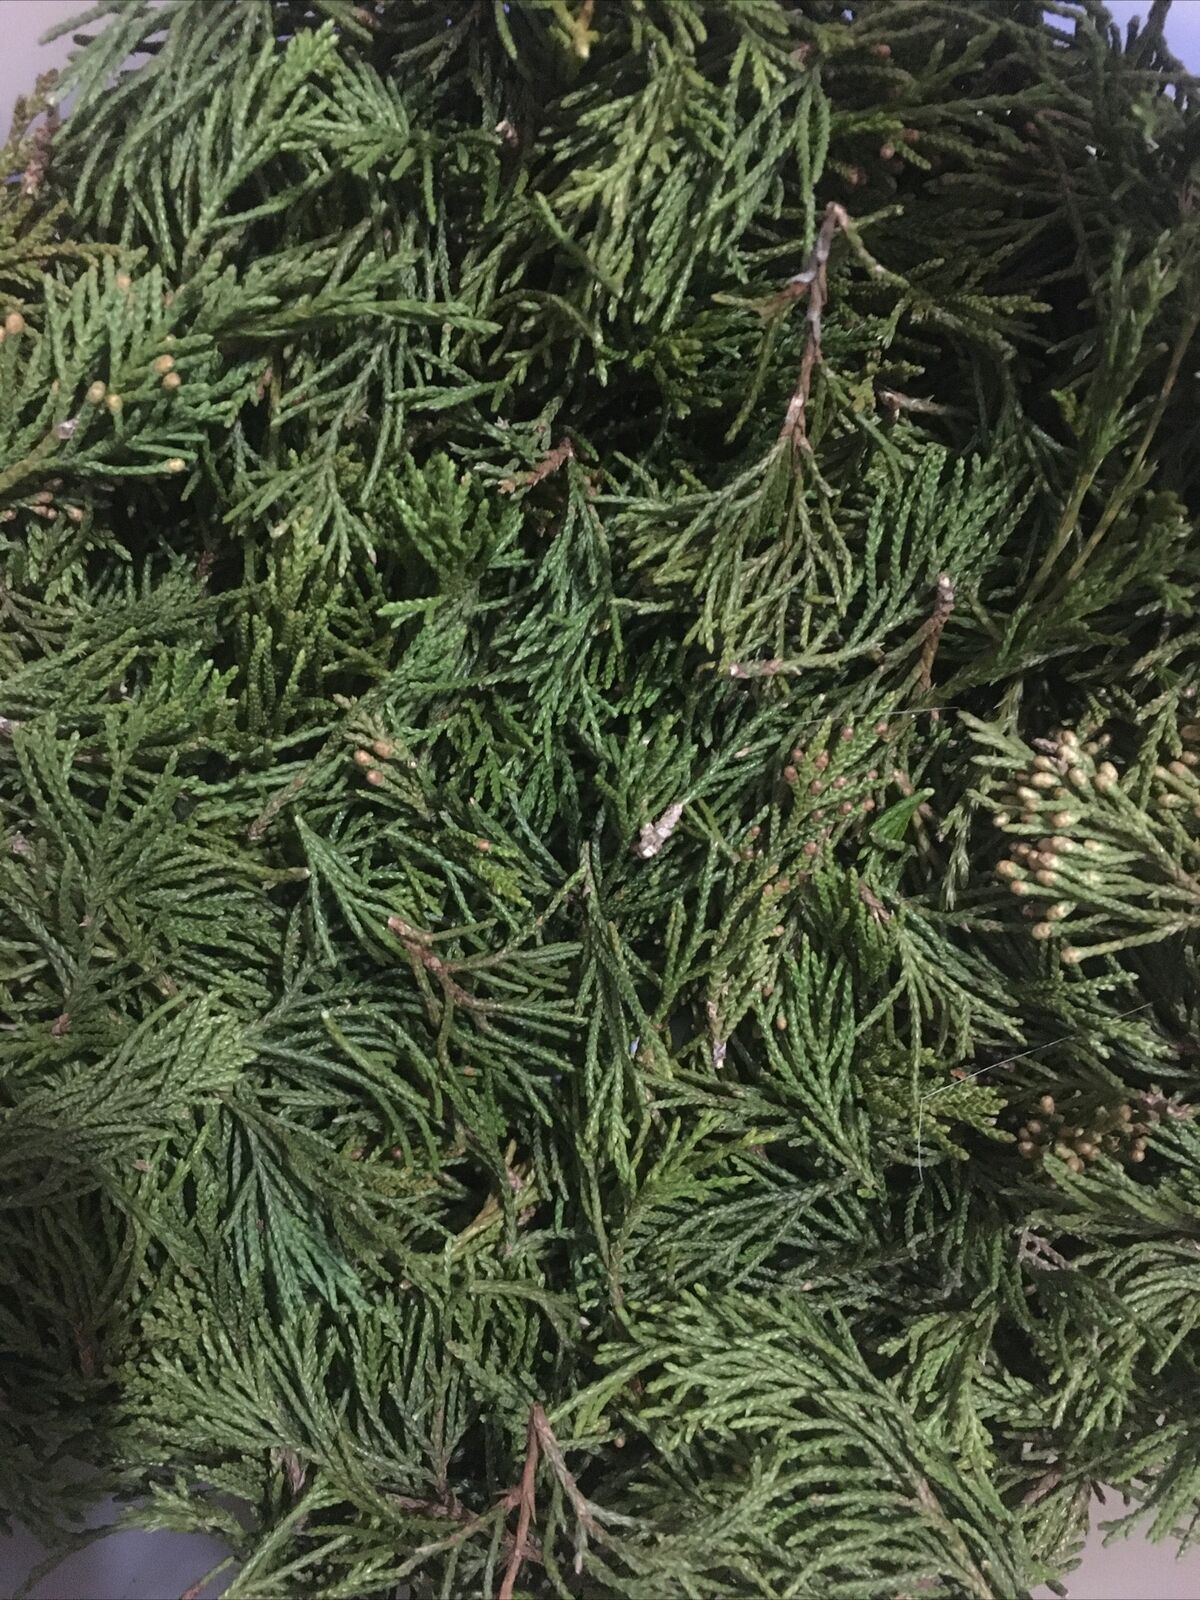 6 oz Fresh Cedar leaf